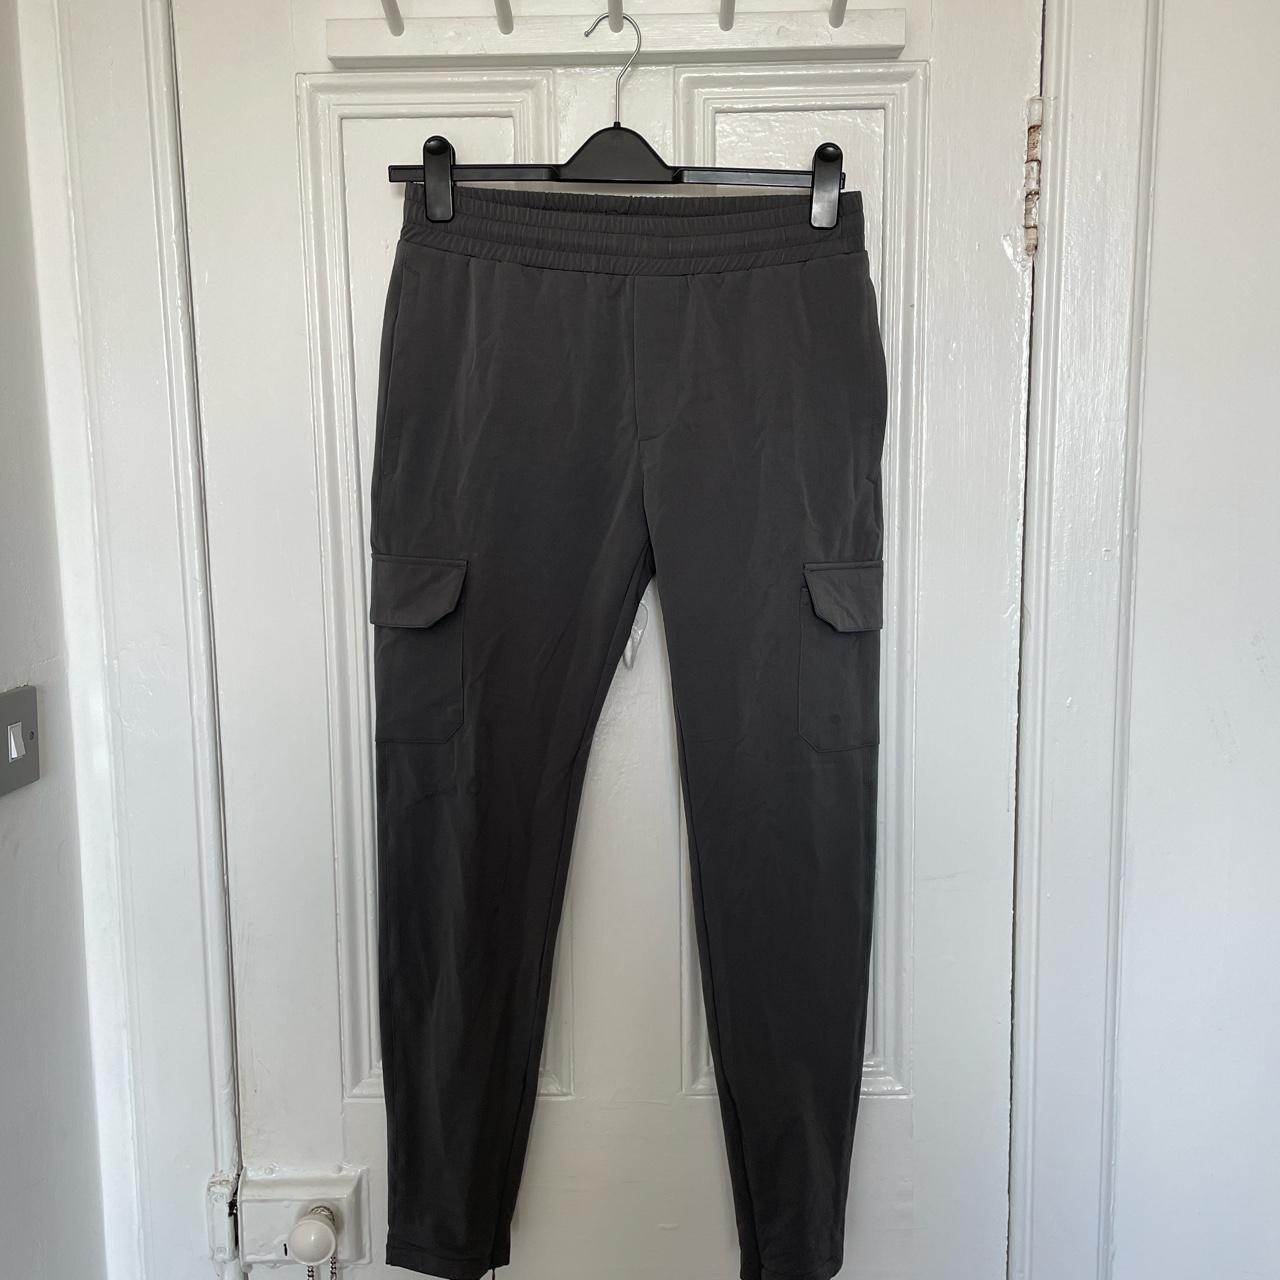 Arne mens cargo trousers. Dark grey. Looking for £40 - Depop